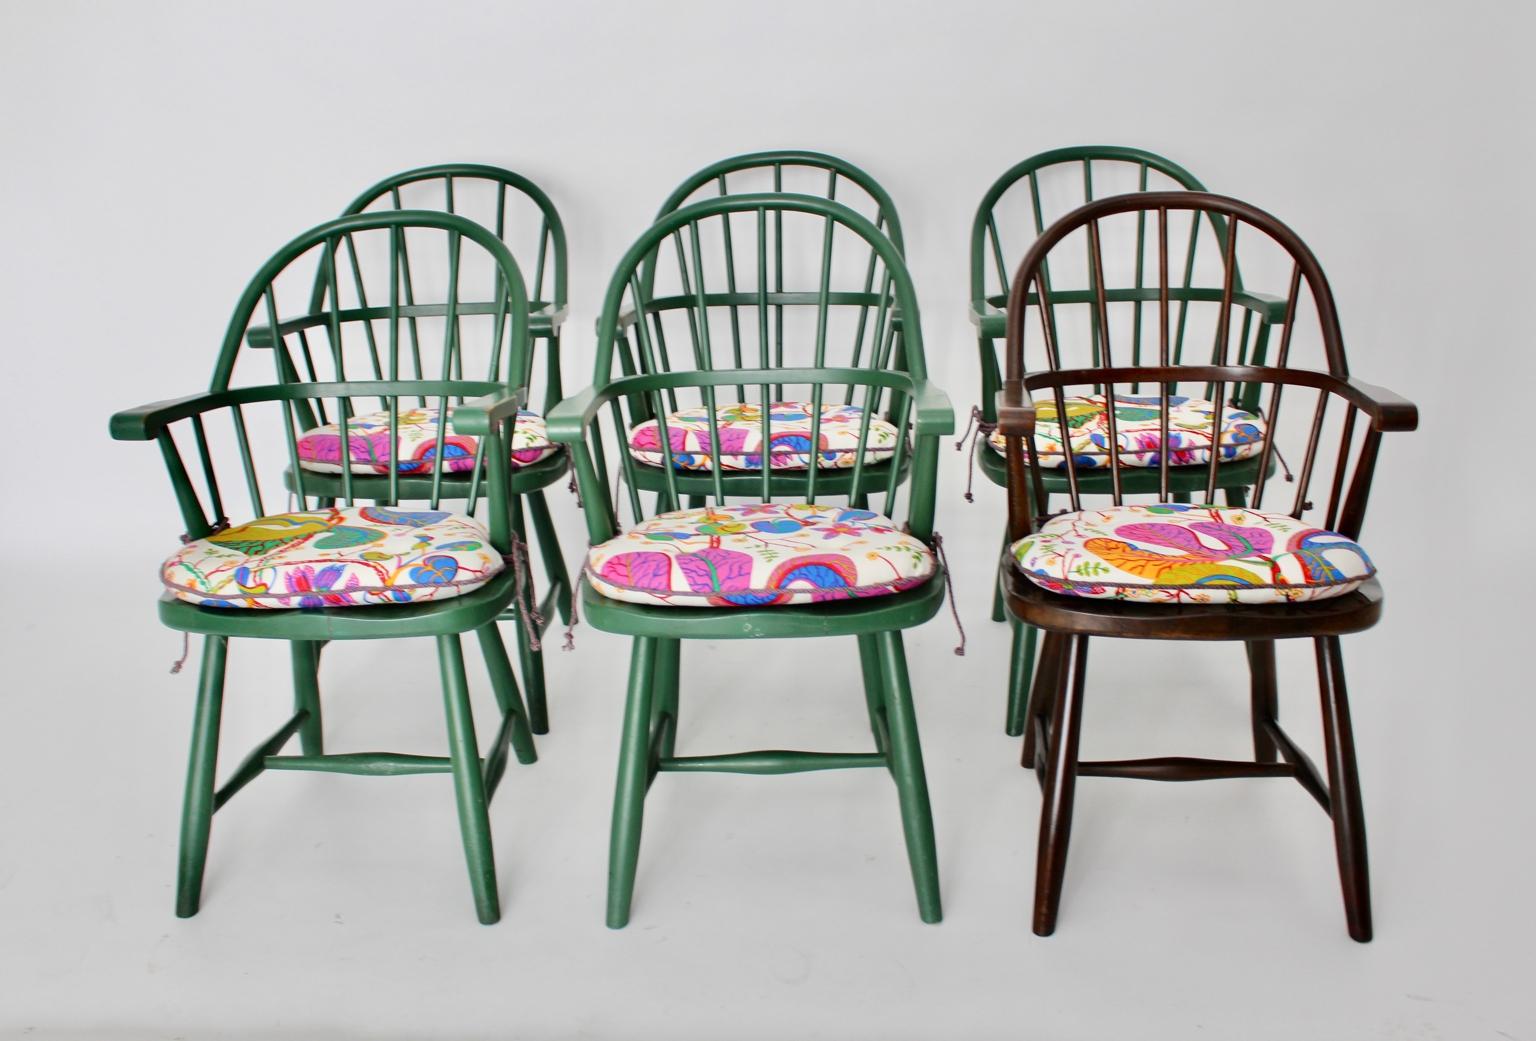 Hervorragender und seltener Satz von 6 Windsor-Stühlen, entworfen von Josef Frank für Haus & Garten und ausgeführt von Thonet, um 1925. (Beschriftung unten)
Das Set besteht aus 5 grünen Windsor-Stühlen und 1 braunen Windsor-Stuhl.
Diese  die